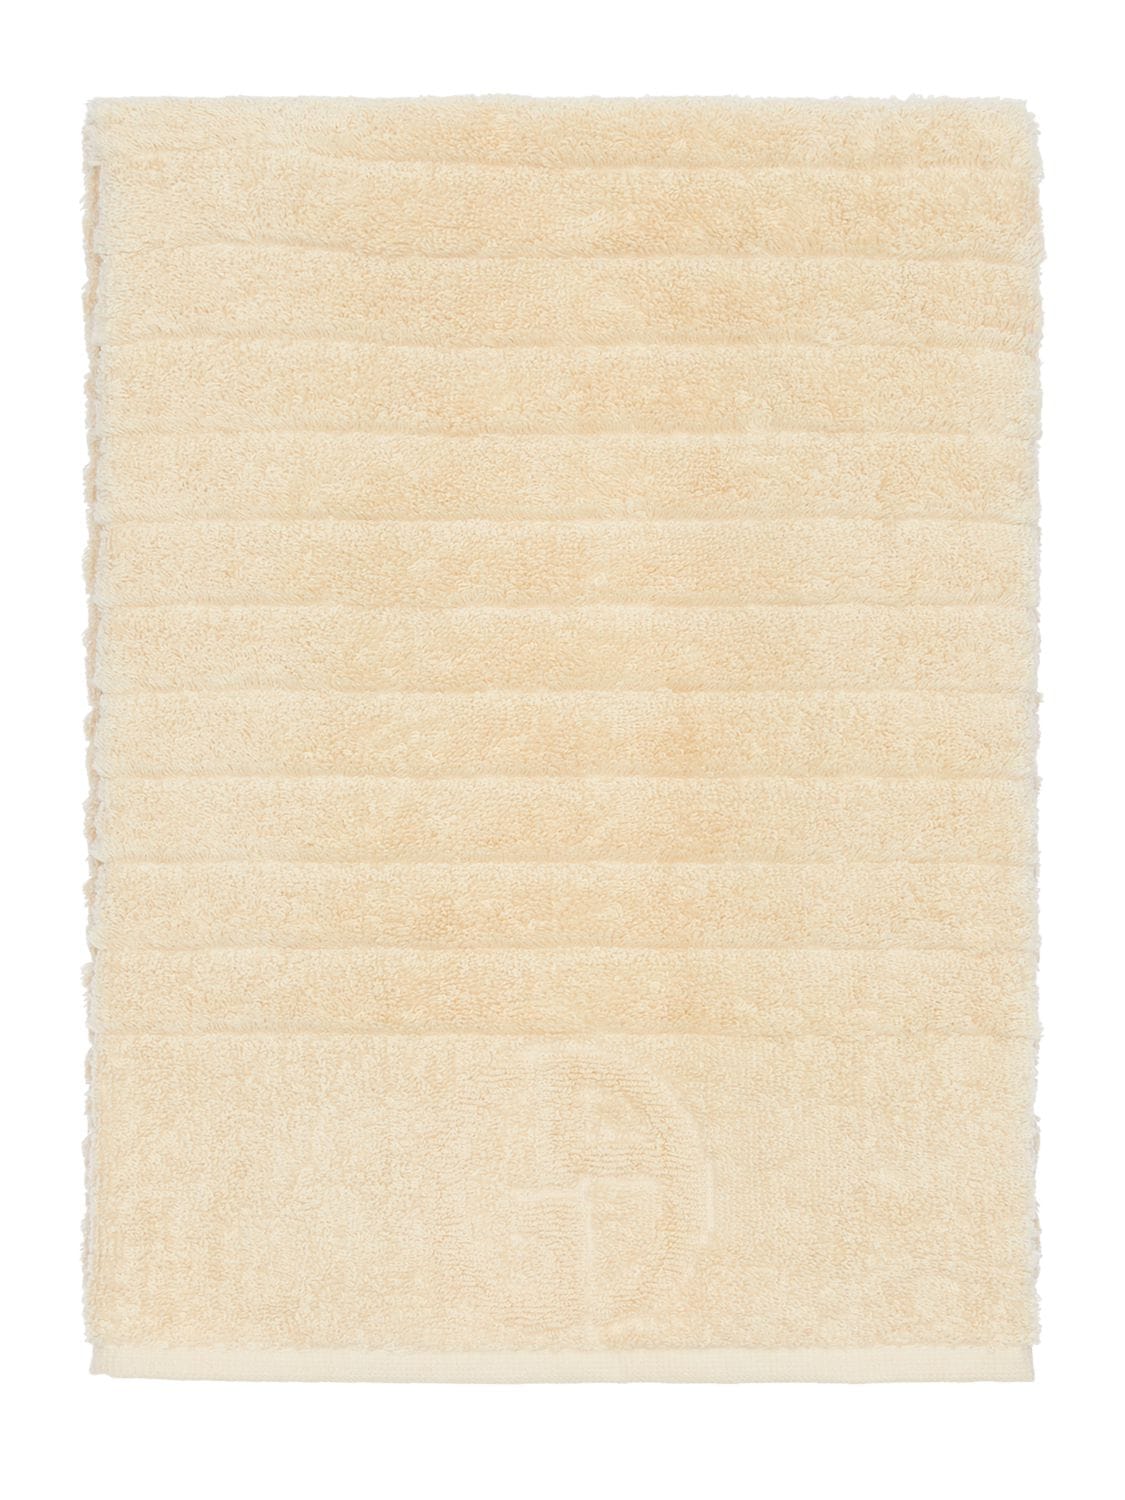 Armani/casa Dorotea Cotton Hand Towel In Sand